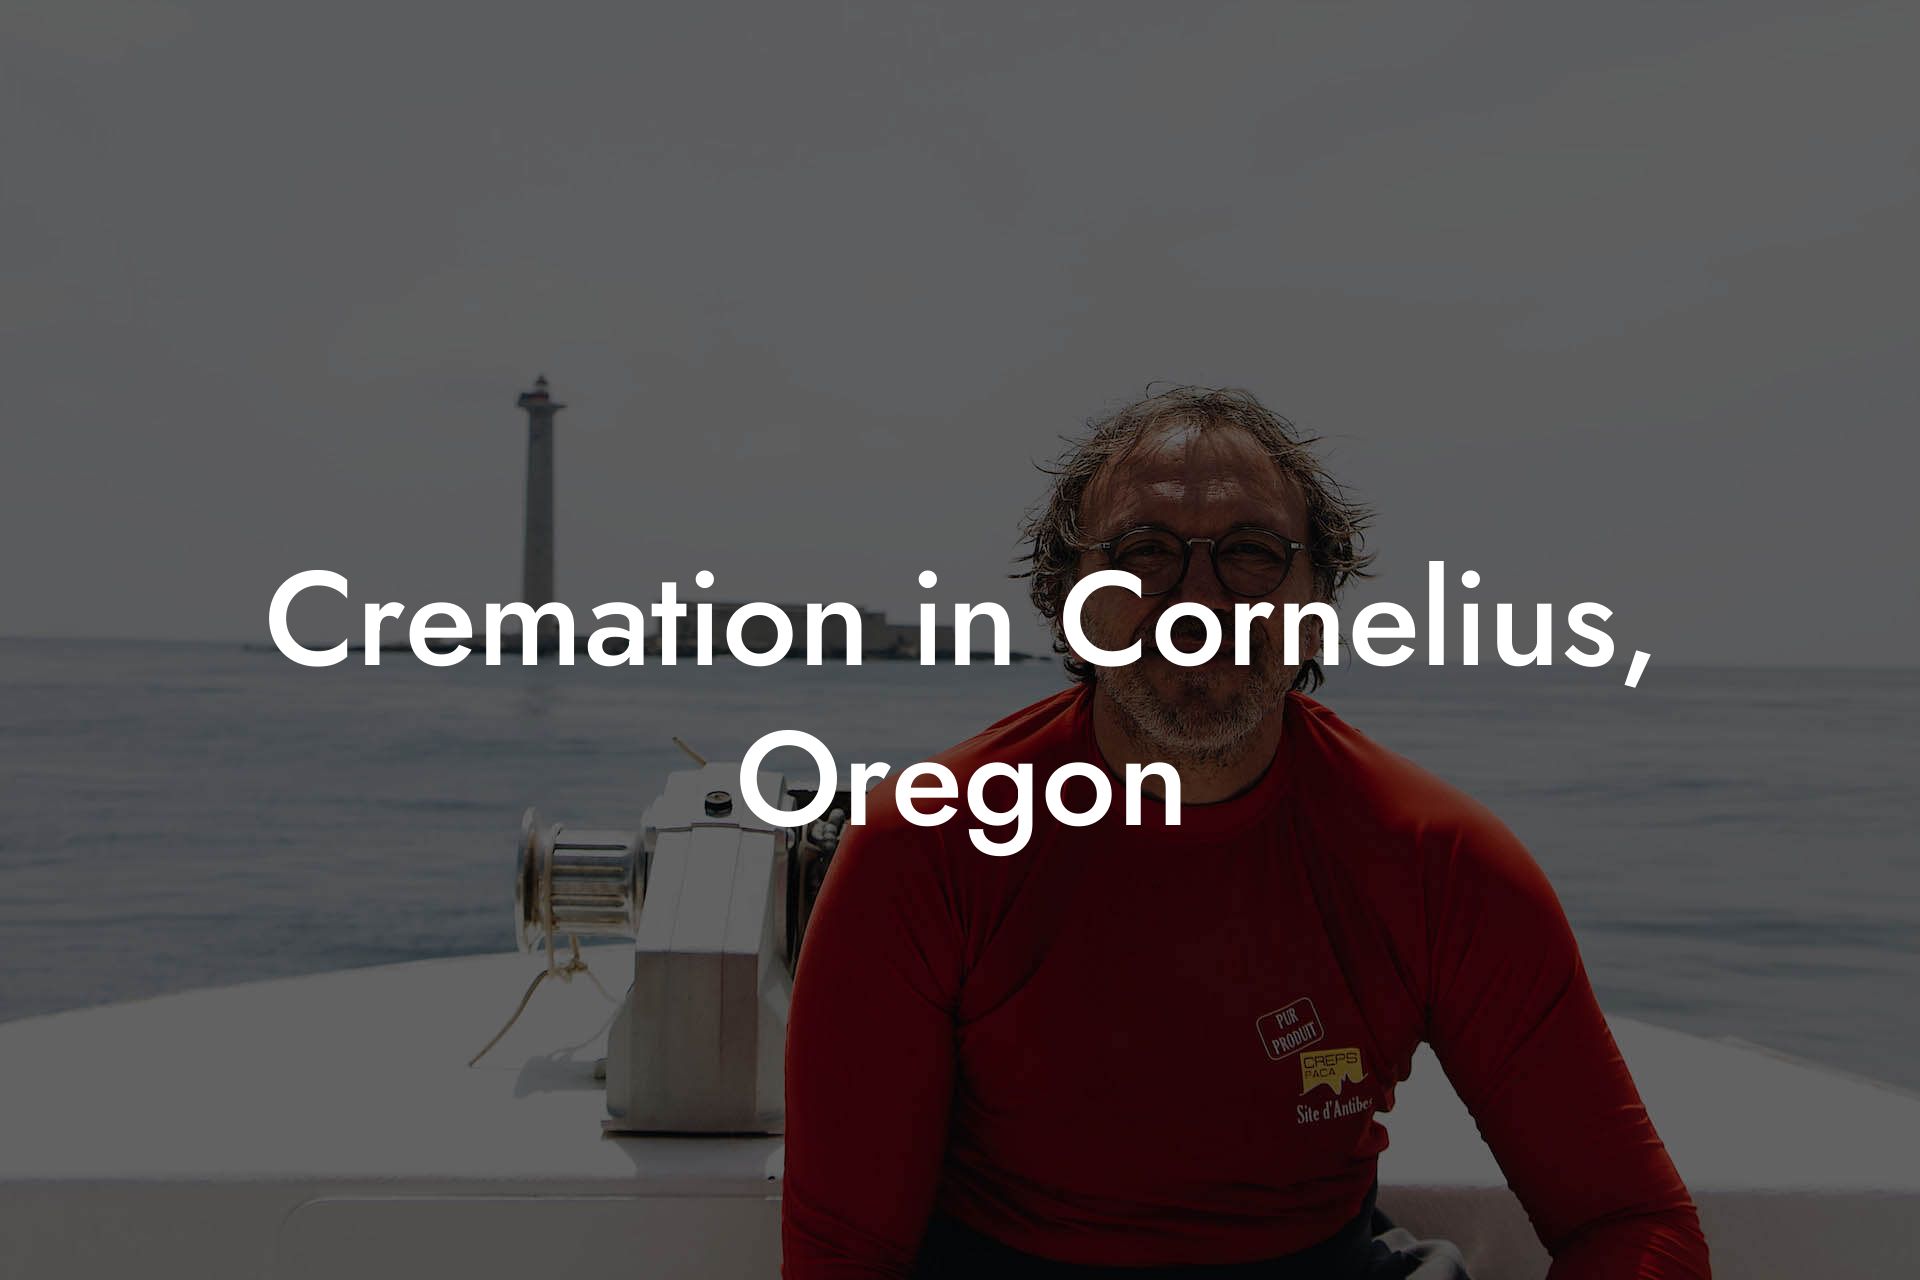 Cremation in Cornelius, Oregon